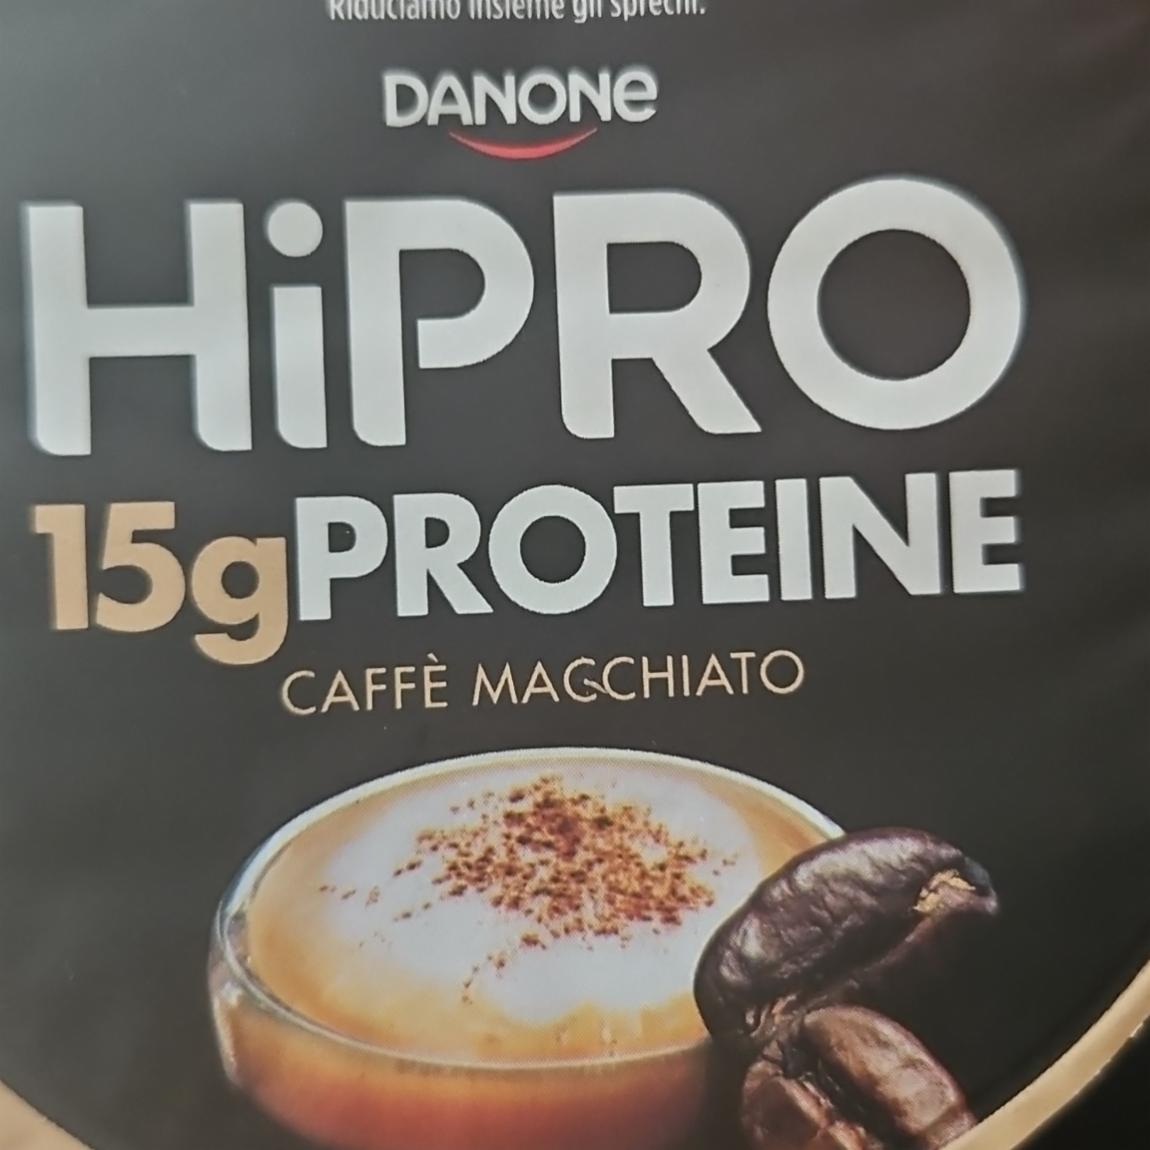 Фото - HiPRO 15g PROTEINE caffè macchiato DANONE